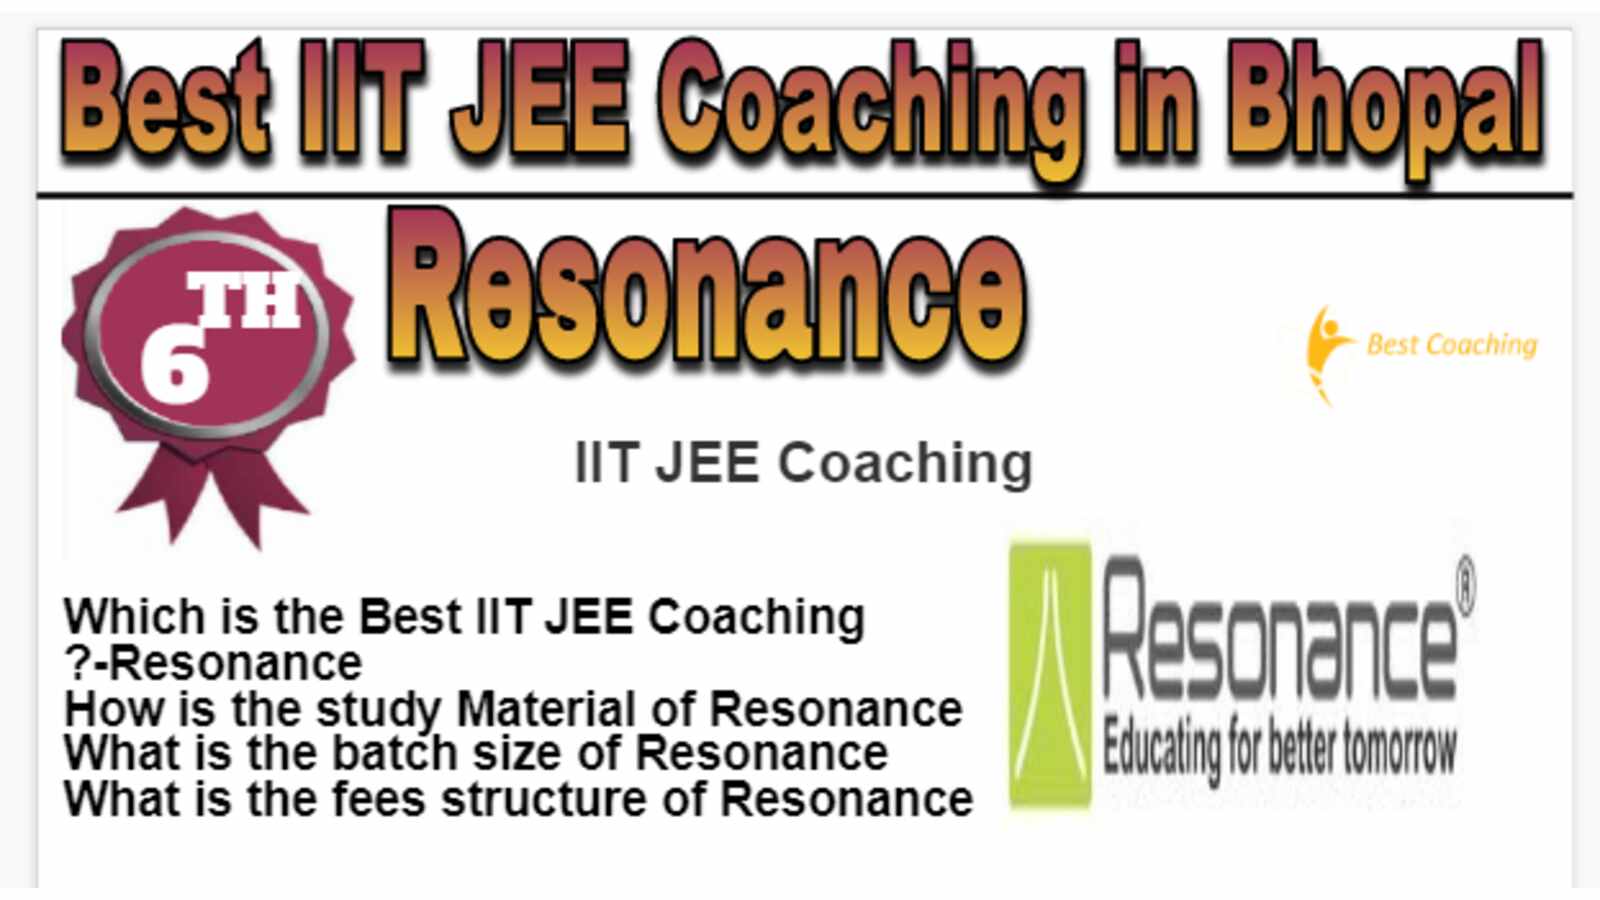 Rank 6 Best IIT JEE Coaching in Bhopal